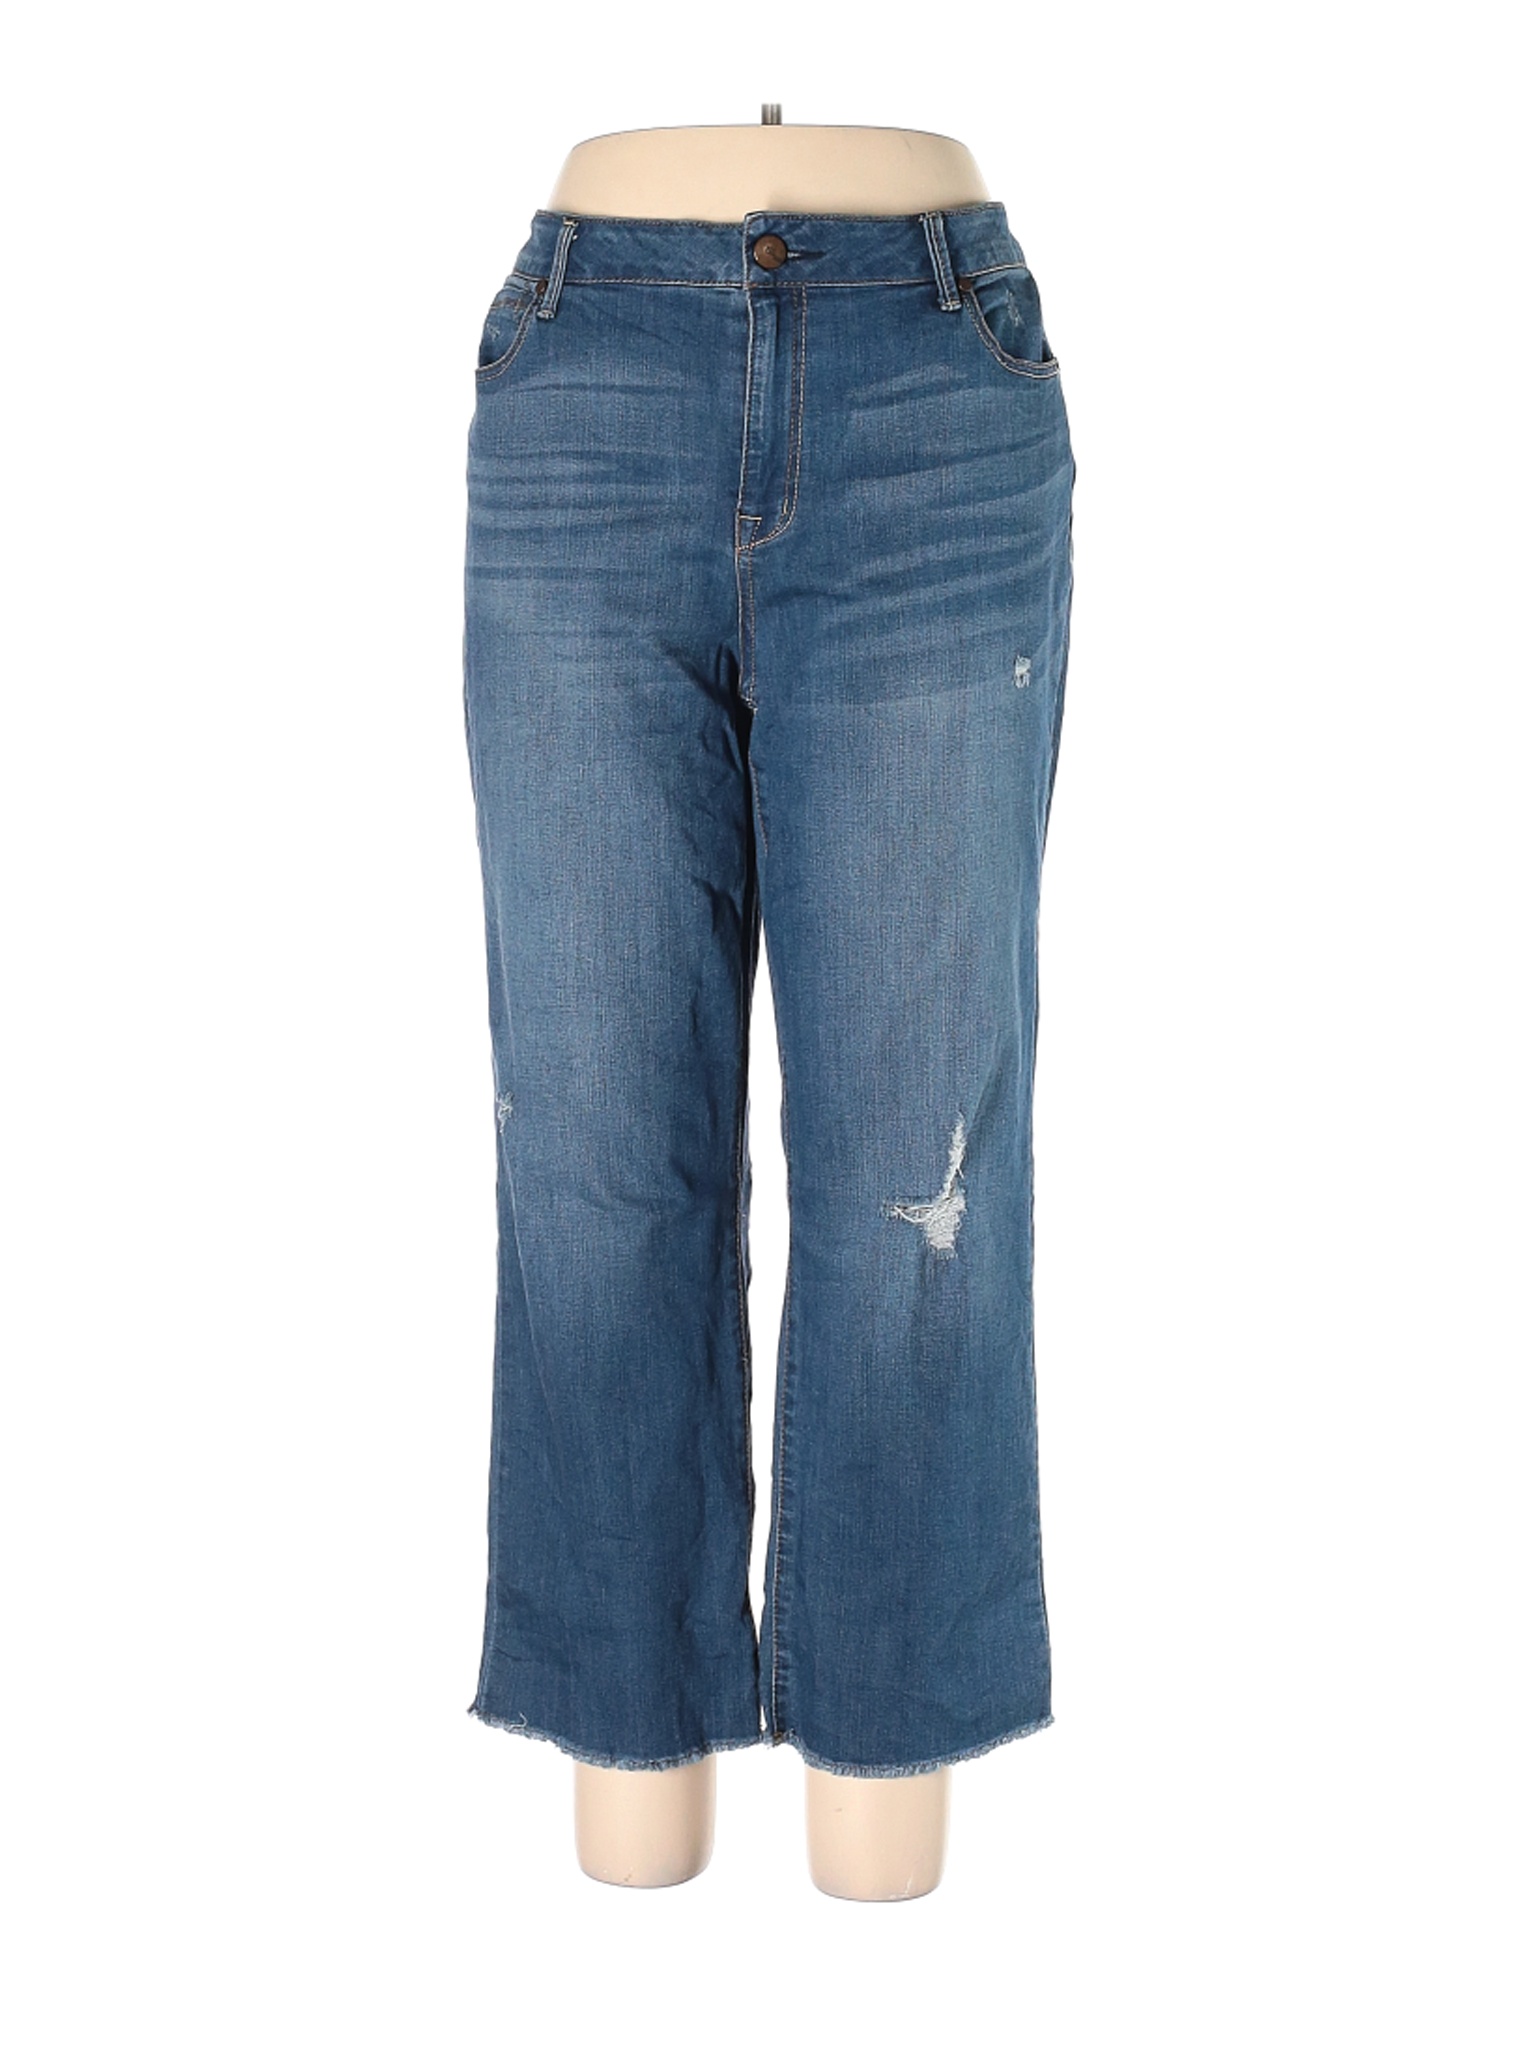 1822 Denim Women Blue Jeans 33W | eBay